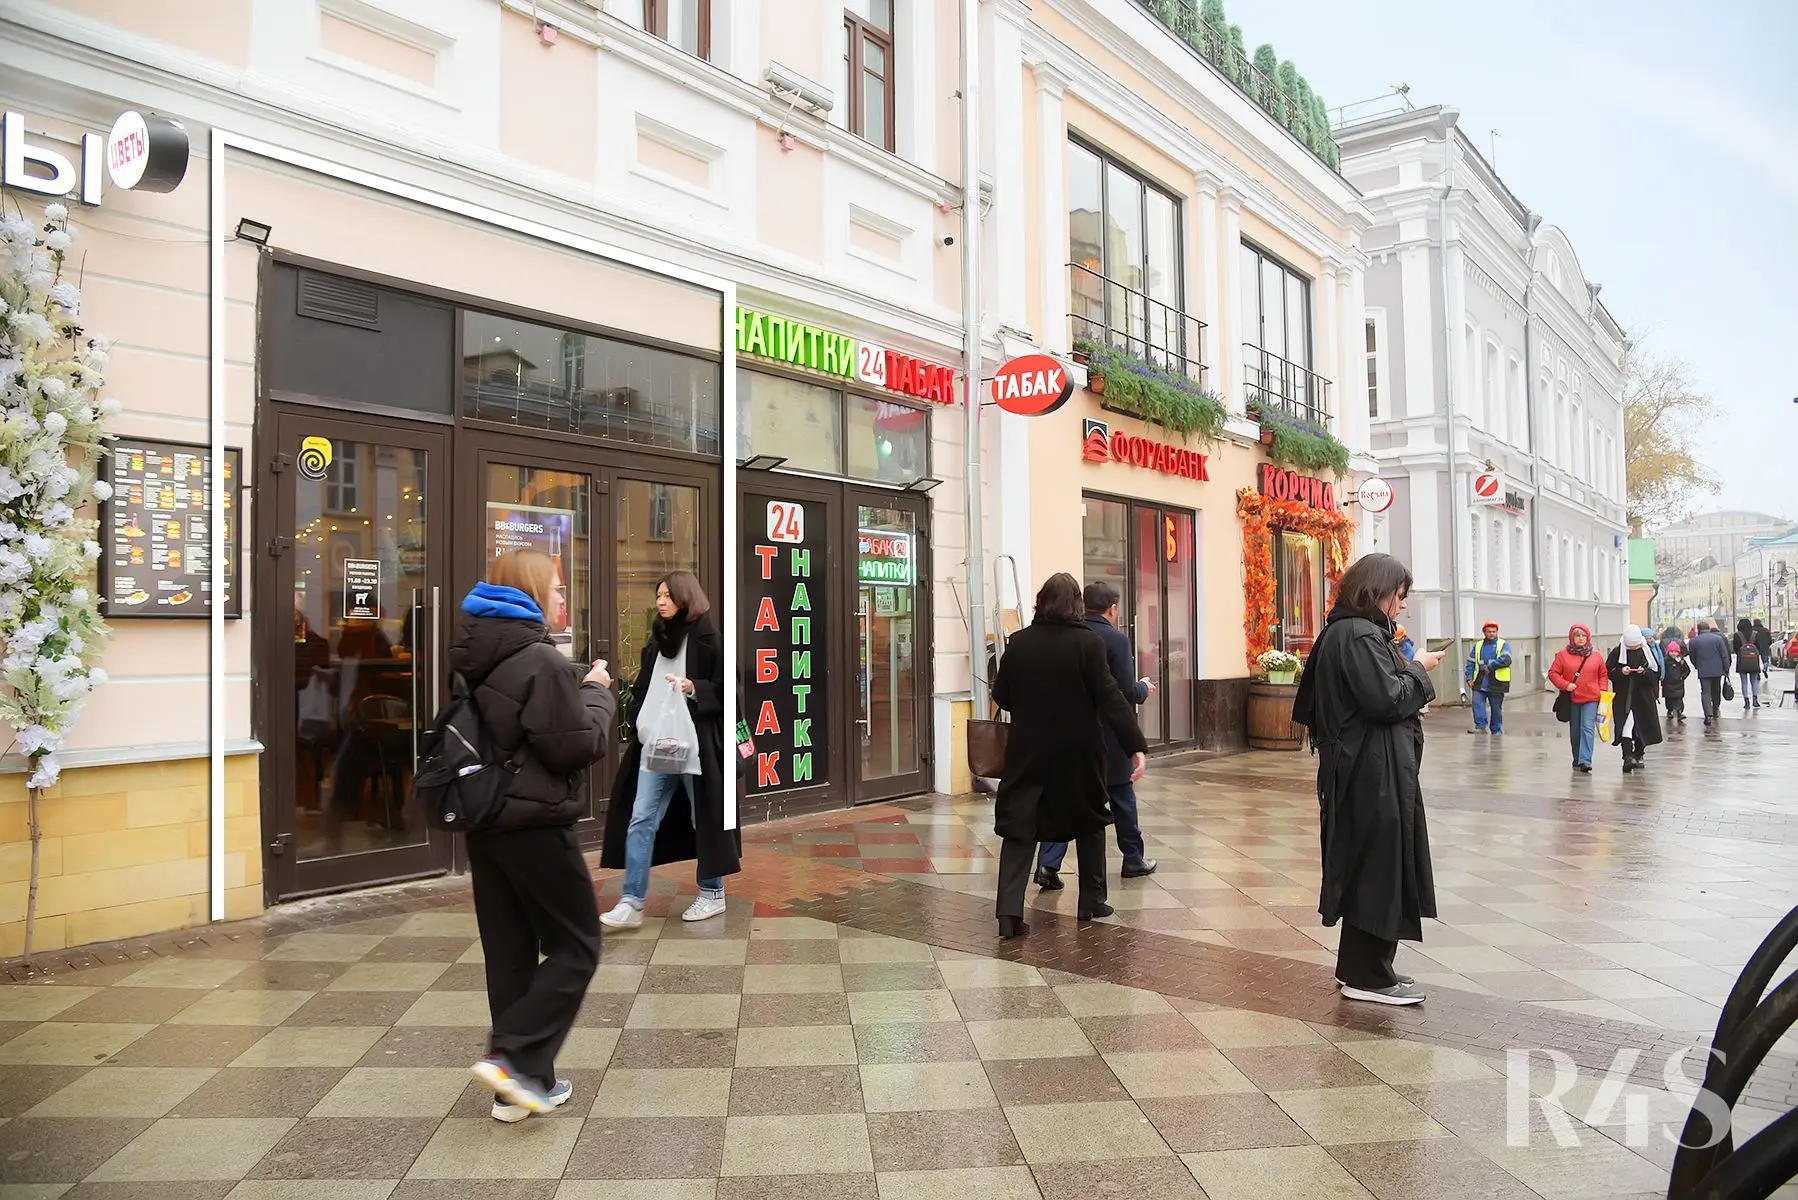 Аренда торгового помещения площадью 78.2 м2 в Москве: Пятницкая улица, 16с1 R4S | Realty4Sale